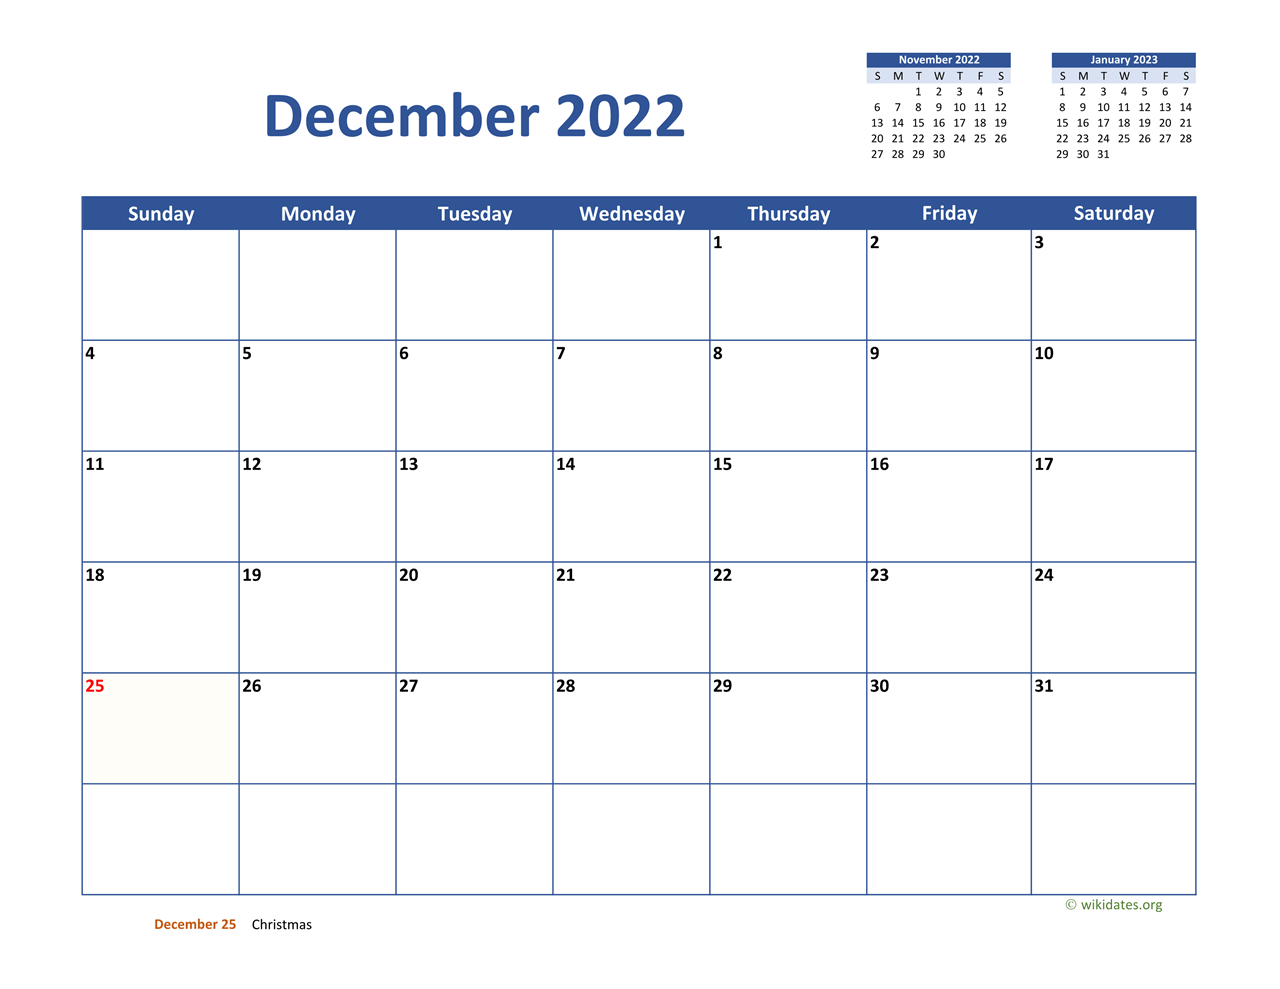 December 2022 January 2023 Calendar December 2022 Calendar Classic | Wikidates.org